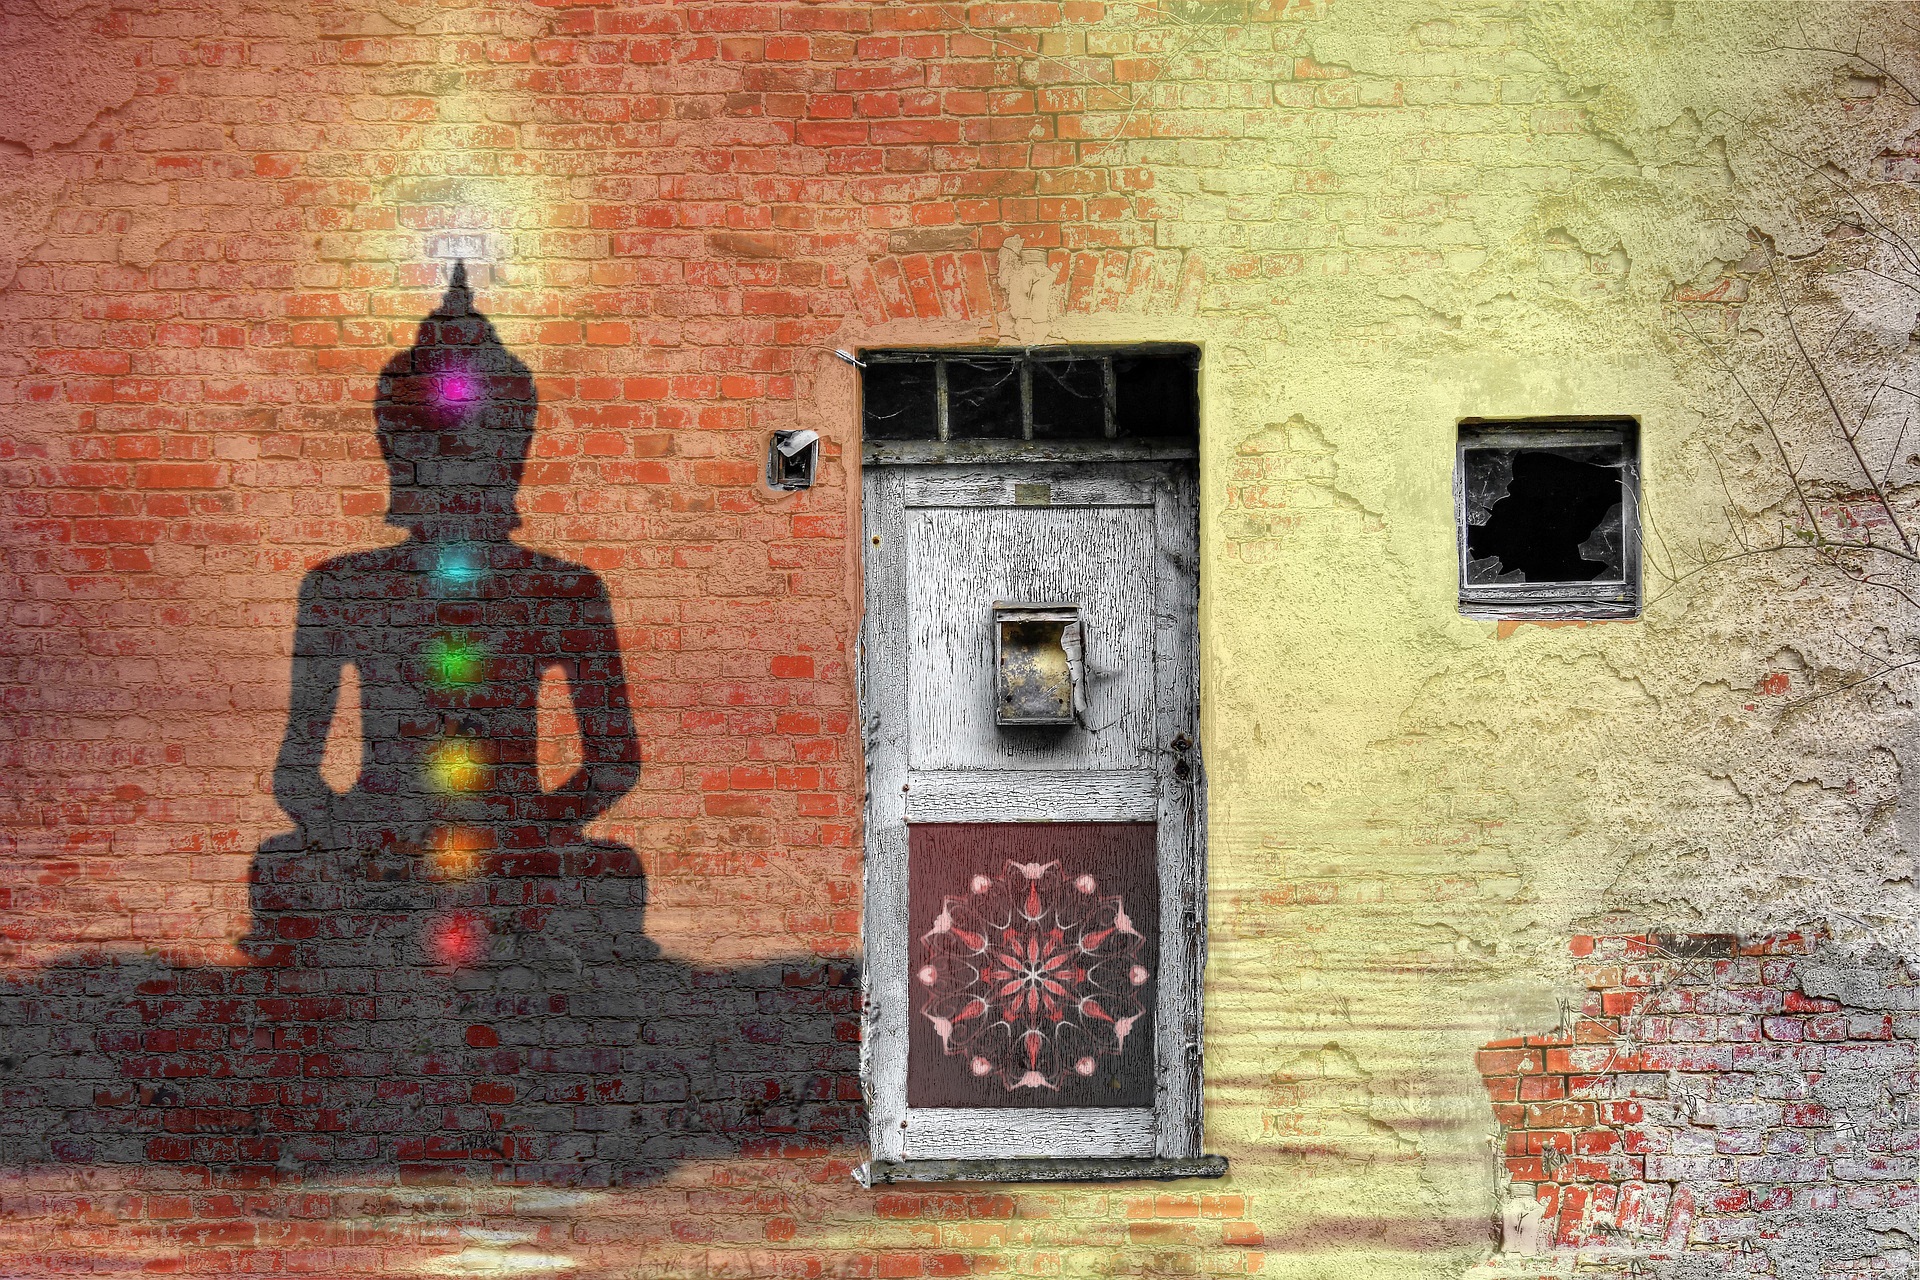 Chakras and mandala graffiti on a wall with door